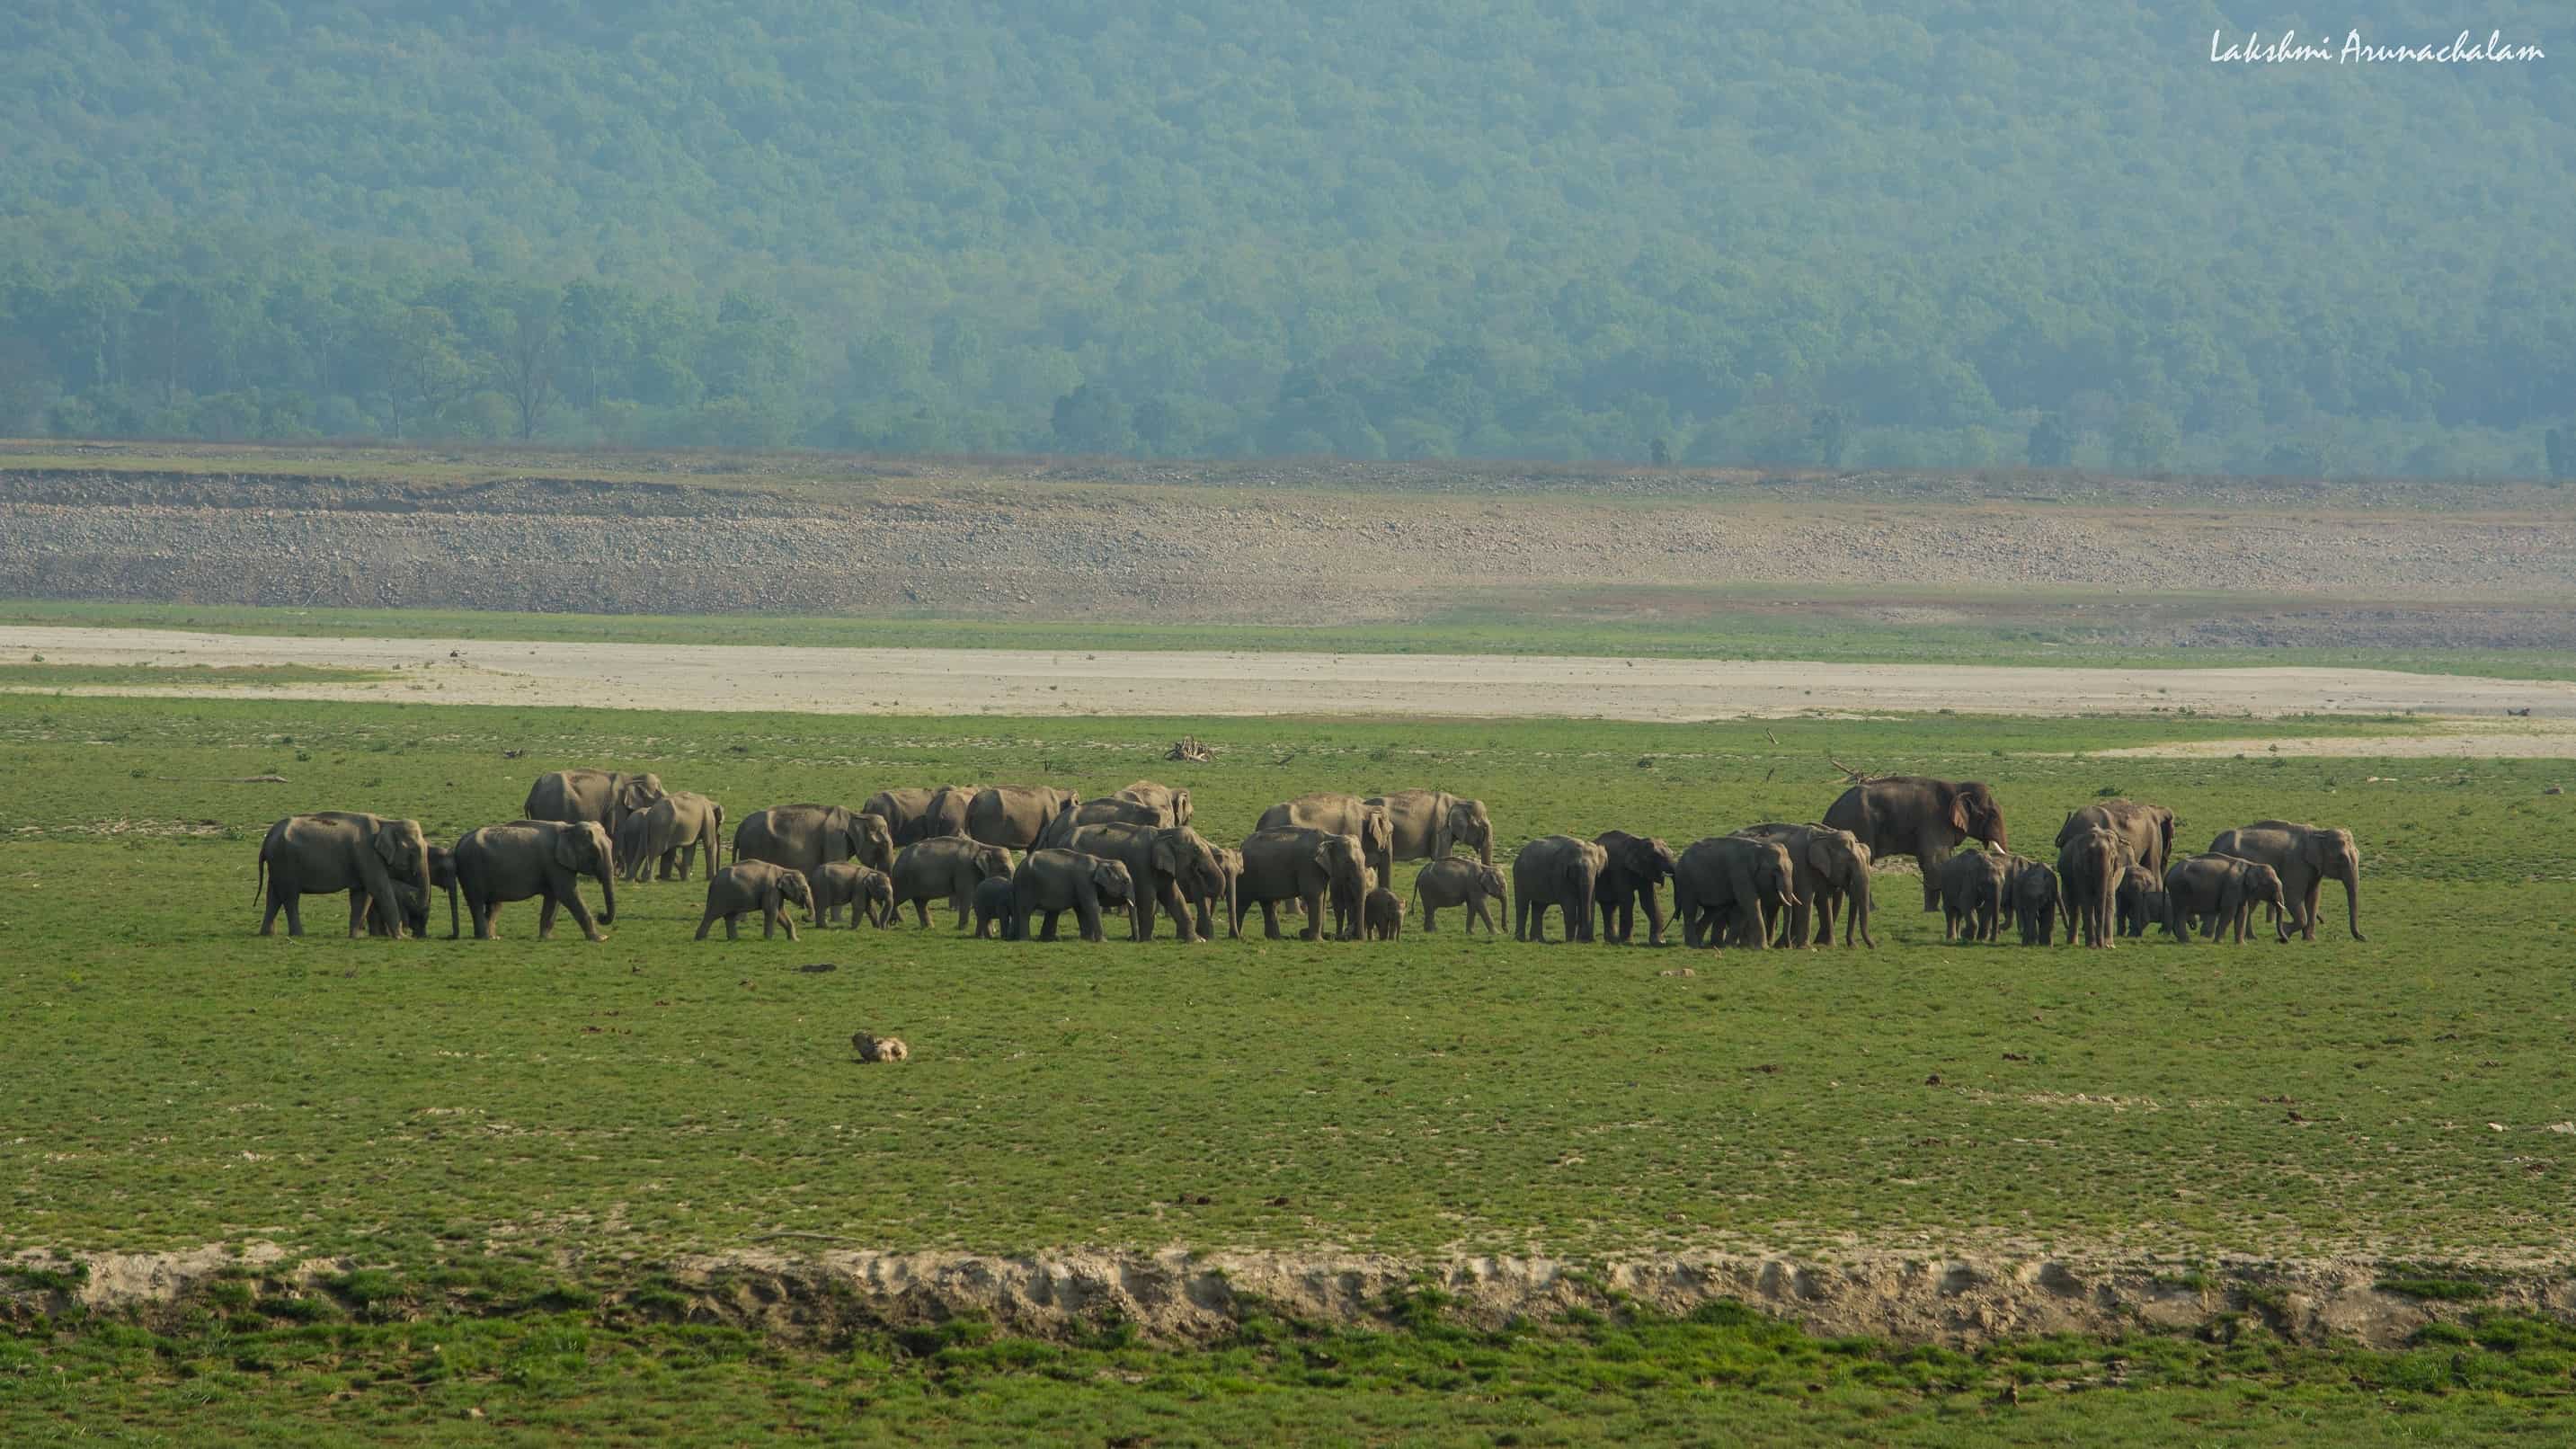 Herd of elephants, Dhikala